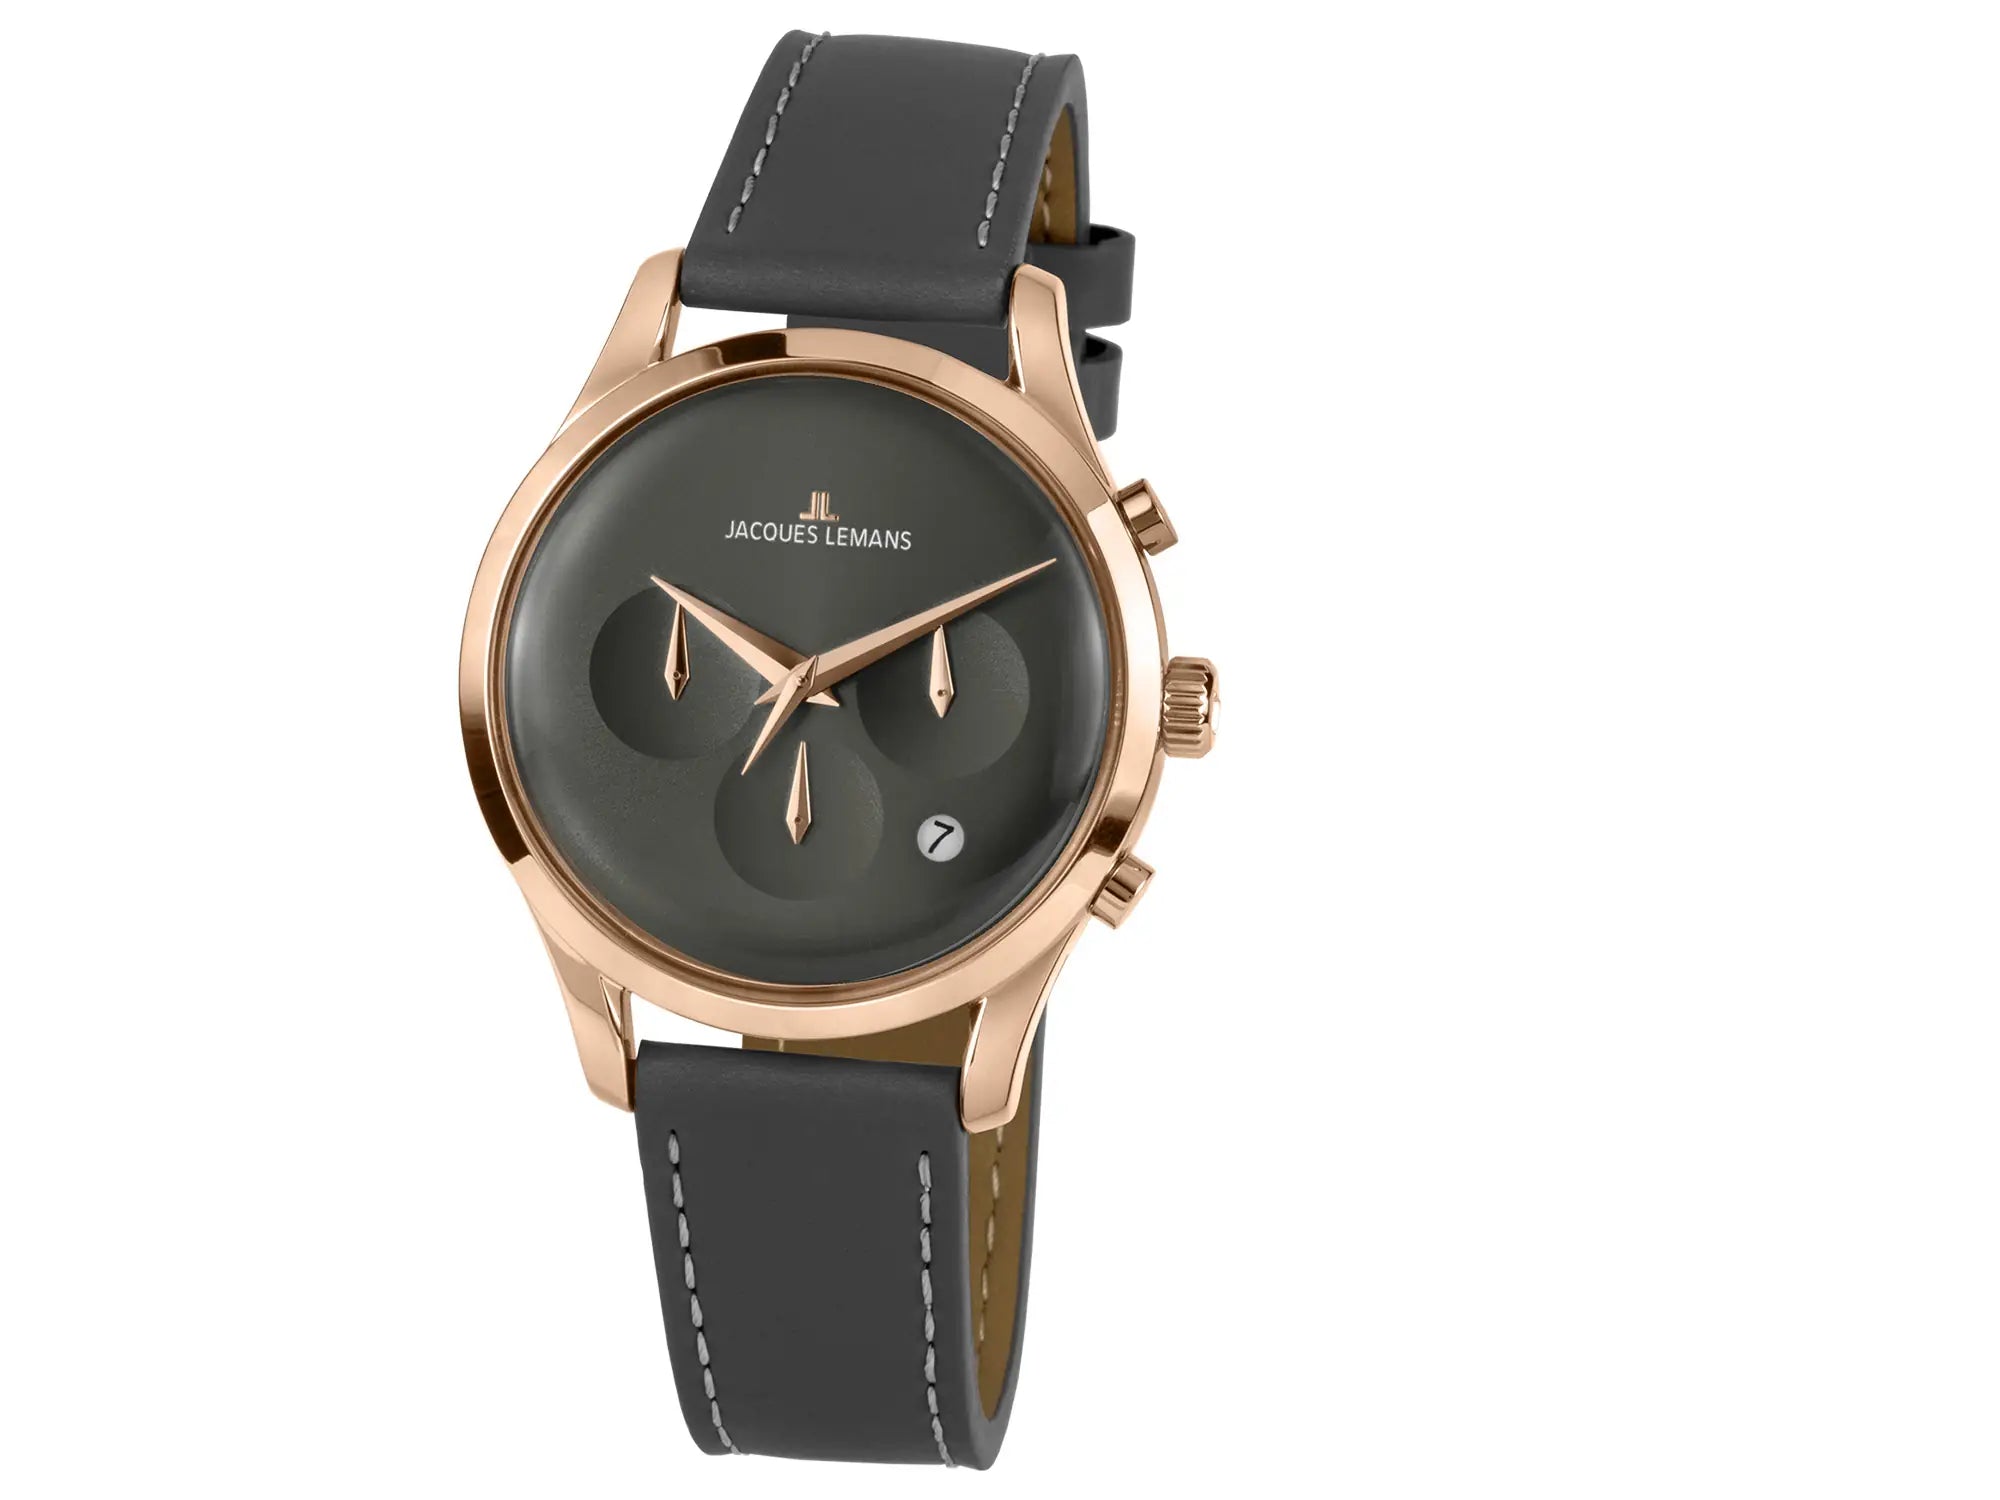 Leicht seitliche Ansicht der Jacques Lemans Uhr "Retro Classic Chronograph" in einem Roségold-farbenem Gehäuse und anthraziten Zifferblatt und Lederband